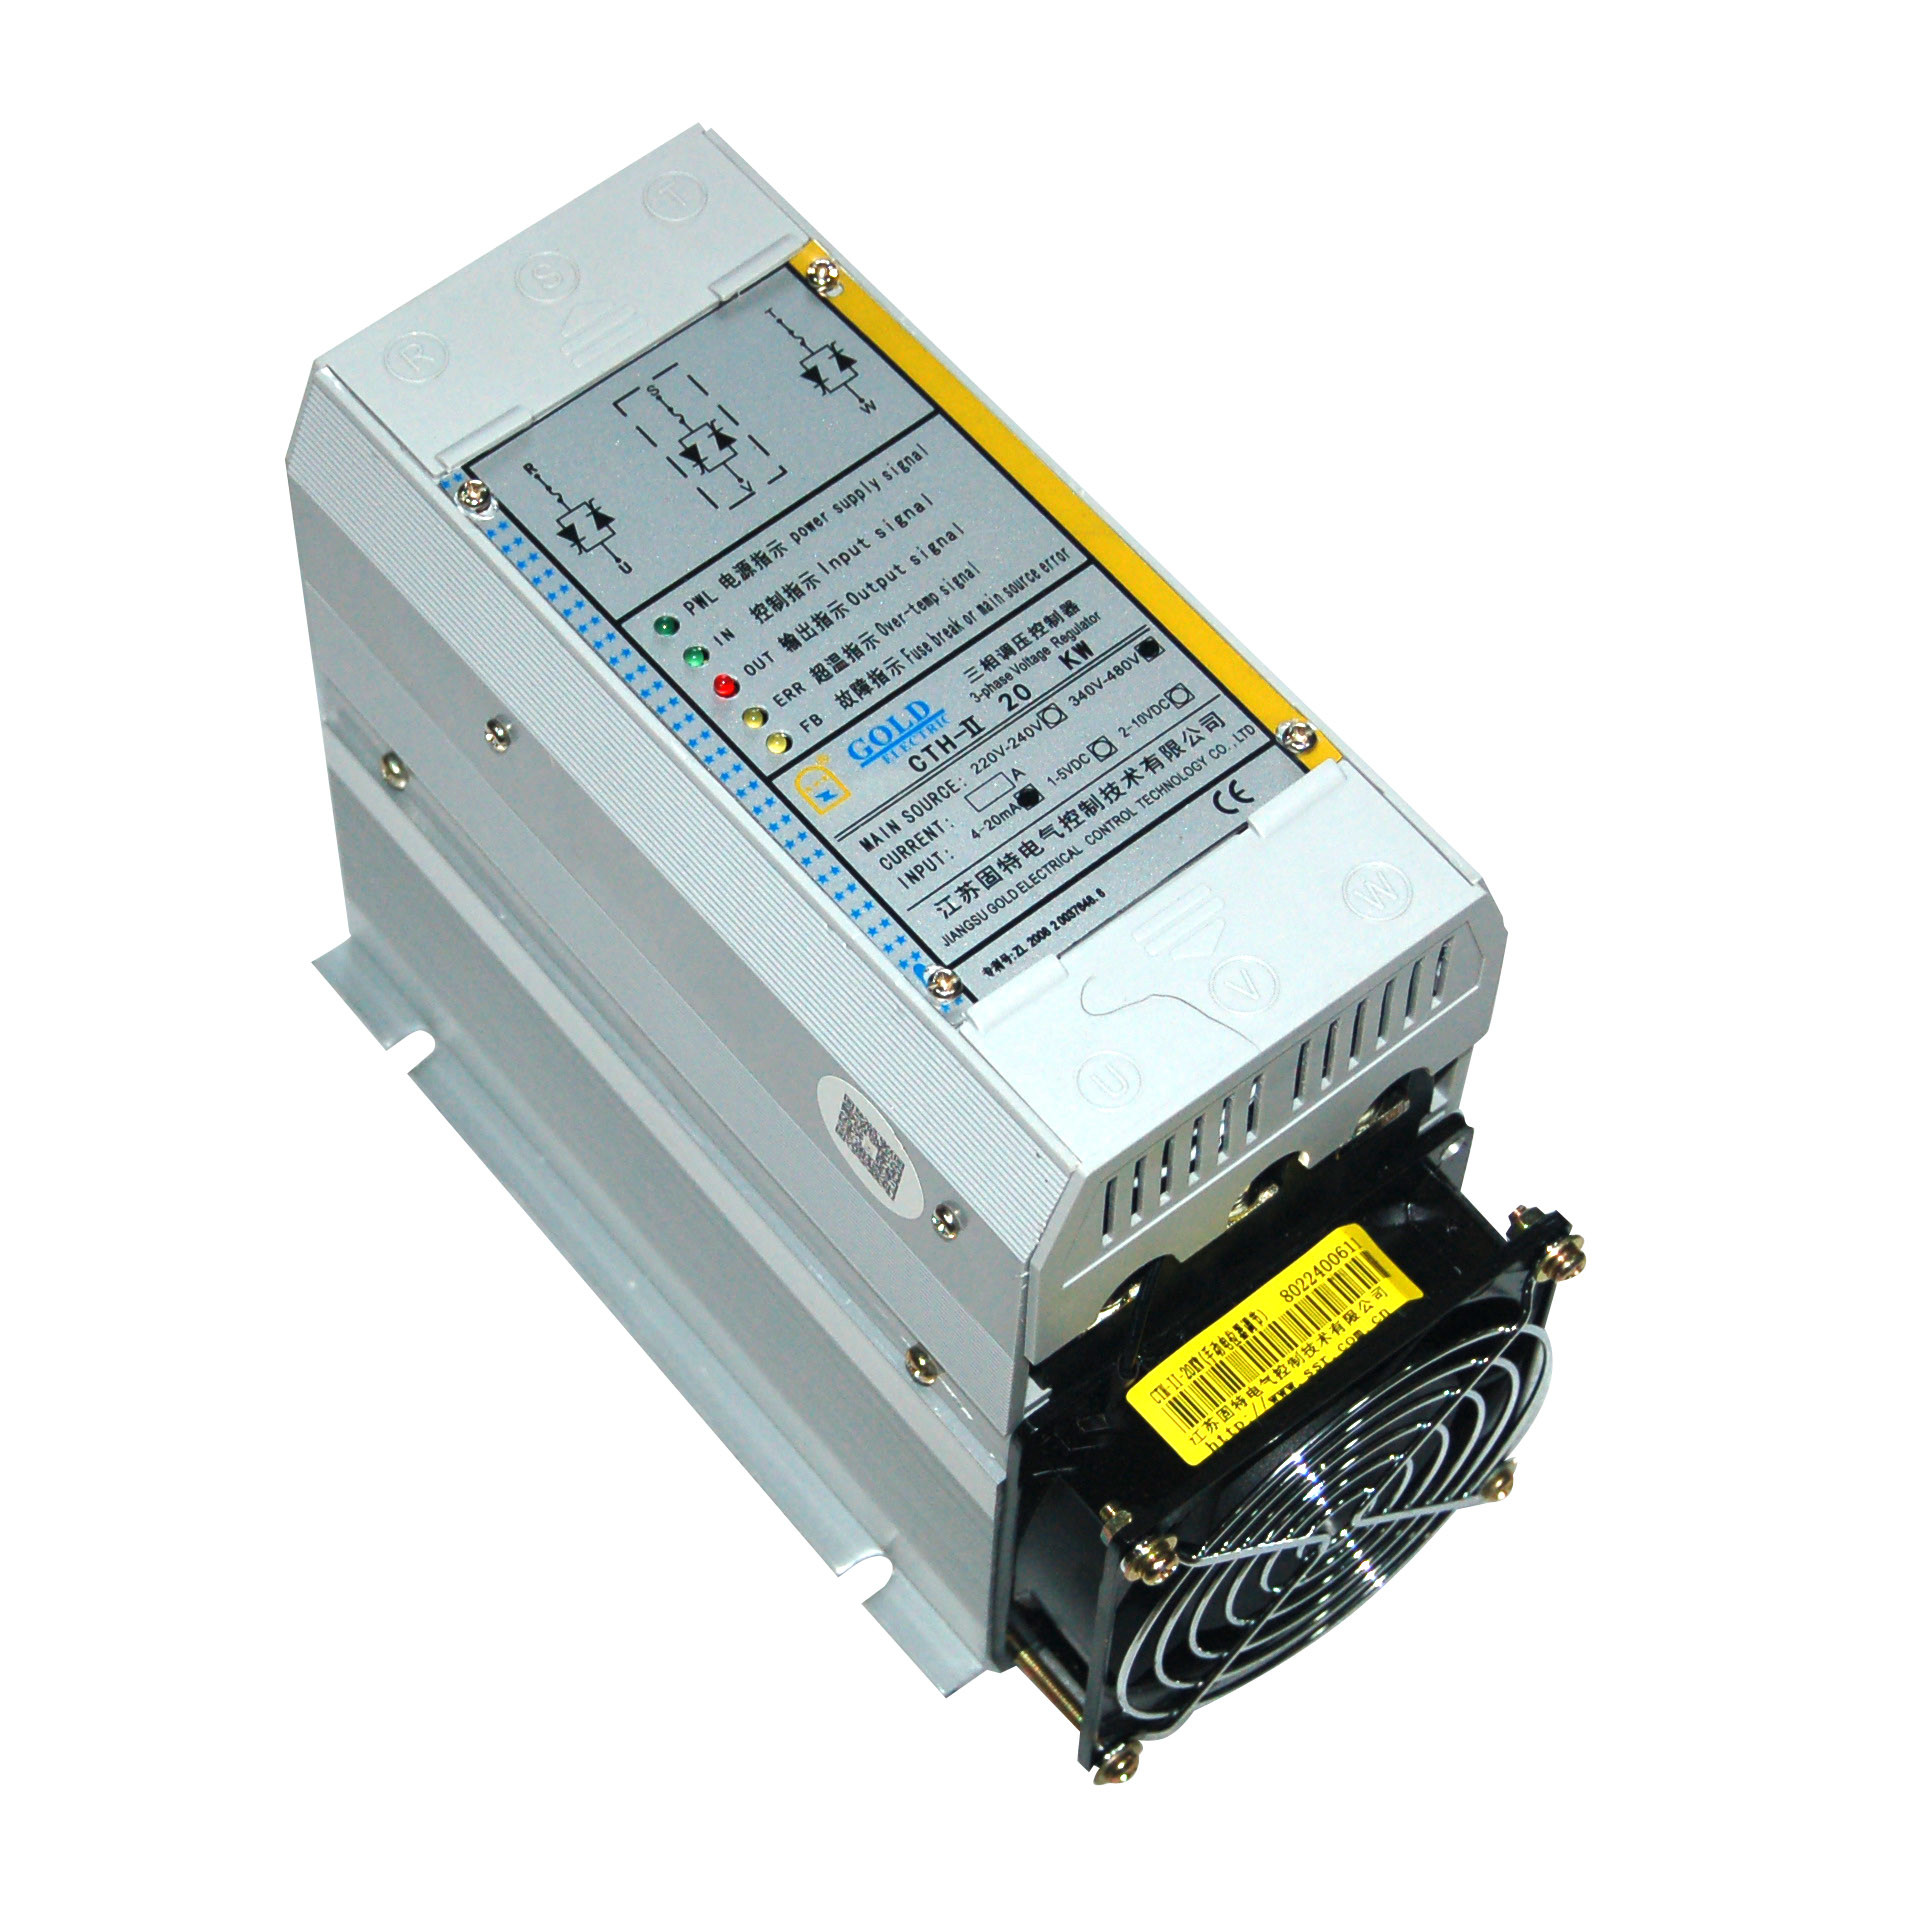 Quality 40kw 4000w 220v Scr Voltage Regulator for sale